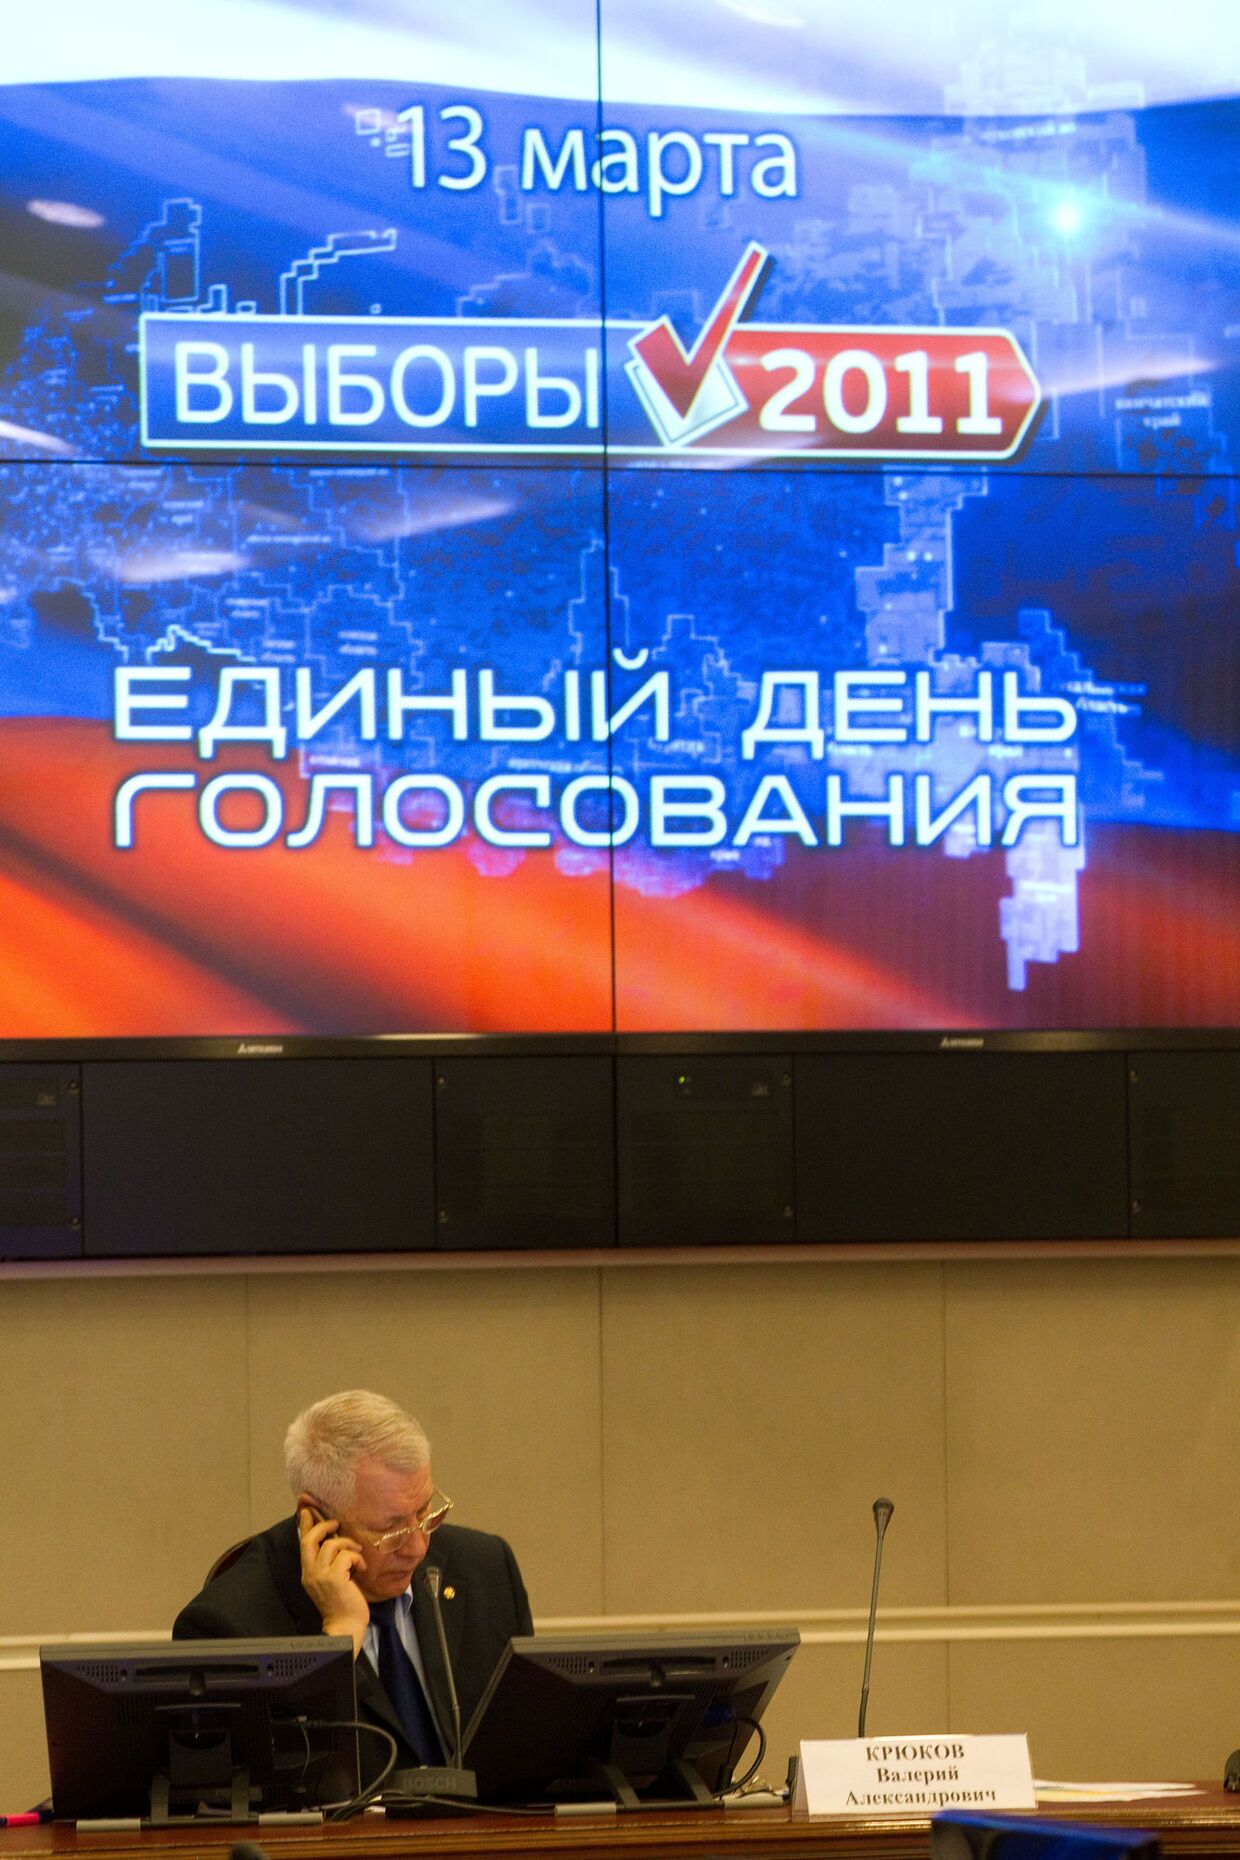 Подведение предварительных итогов выборов в субъектах РФ